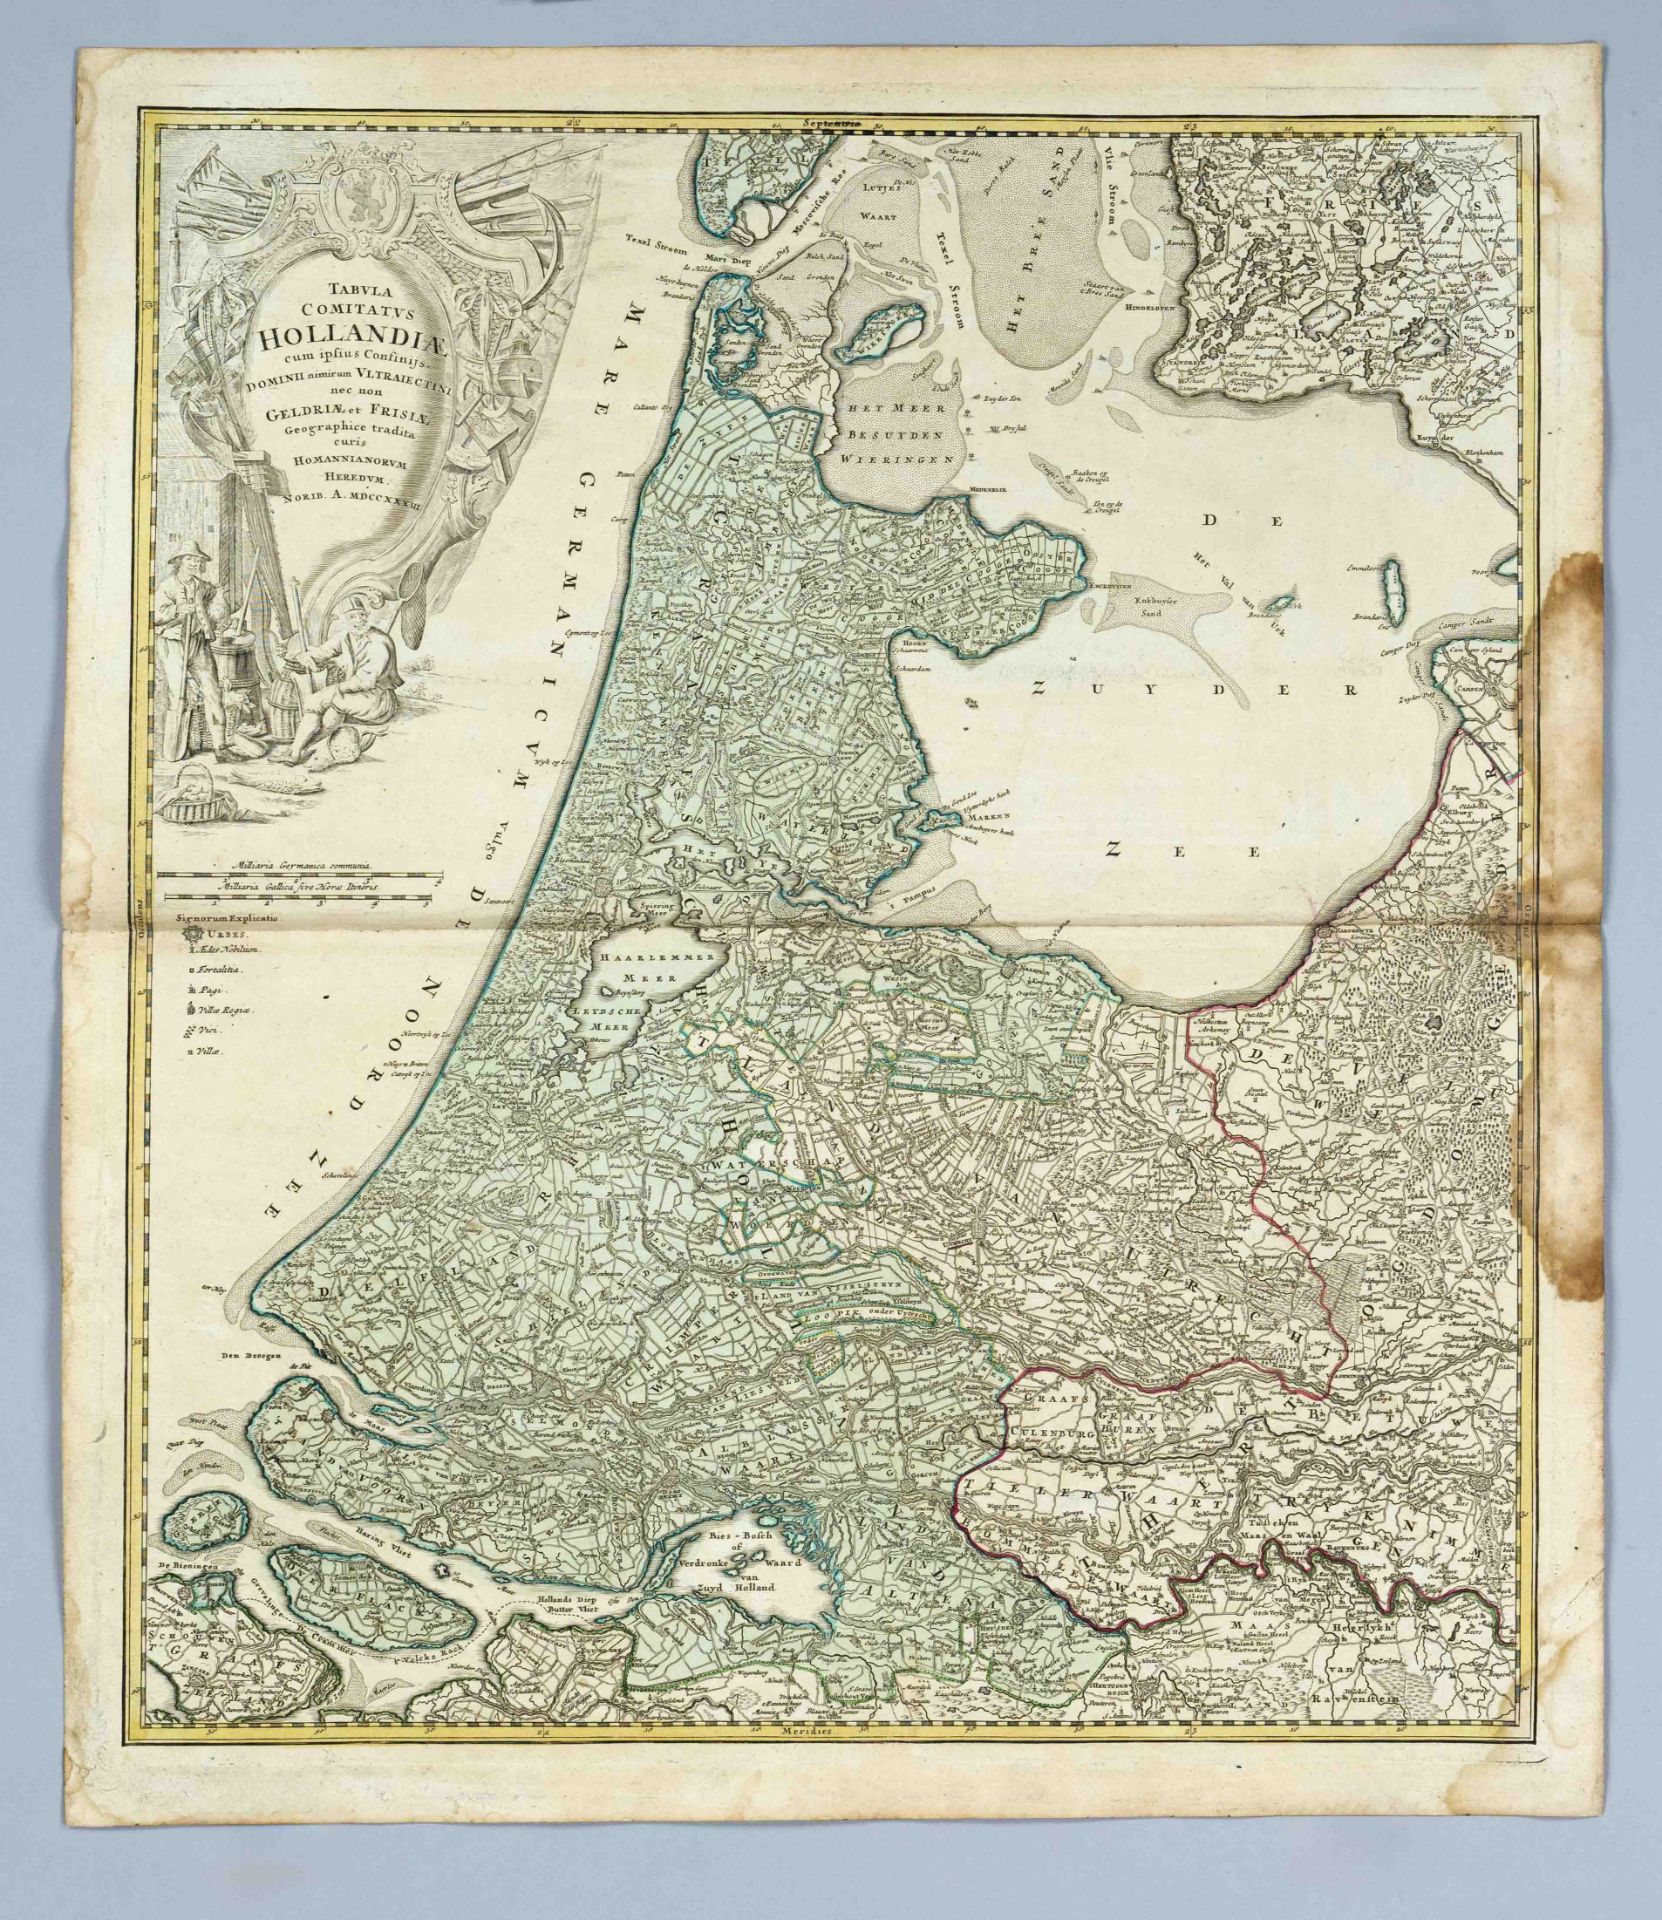 Historical map of Holland and Friesland, ''Tabula Comitatus Hollandiae cum ipsius confinijs, dominii